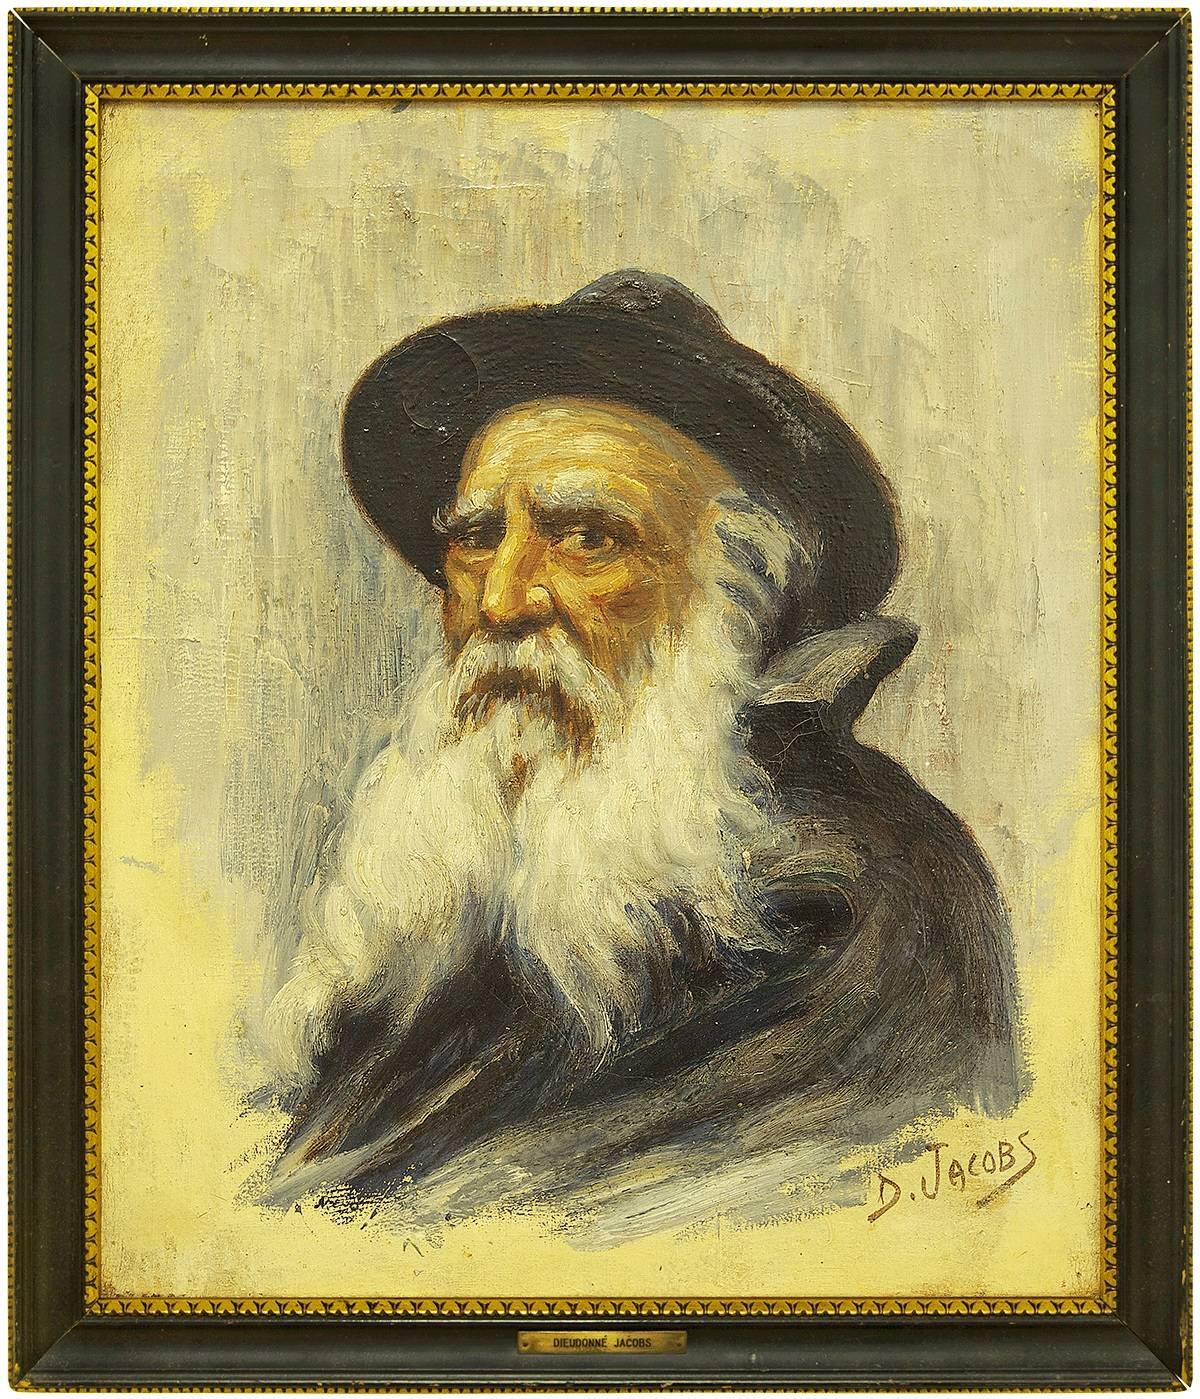 Dieudonne Jacobs Portrait Painting - Portrait of a Rabbi, Belgian Impressionist Painting